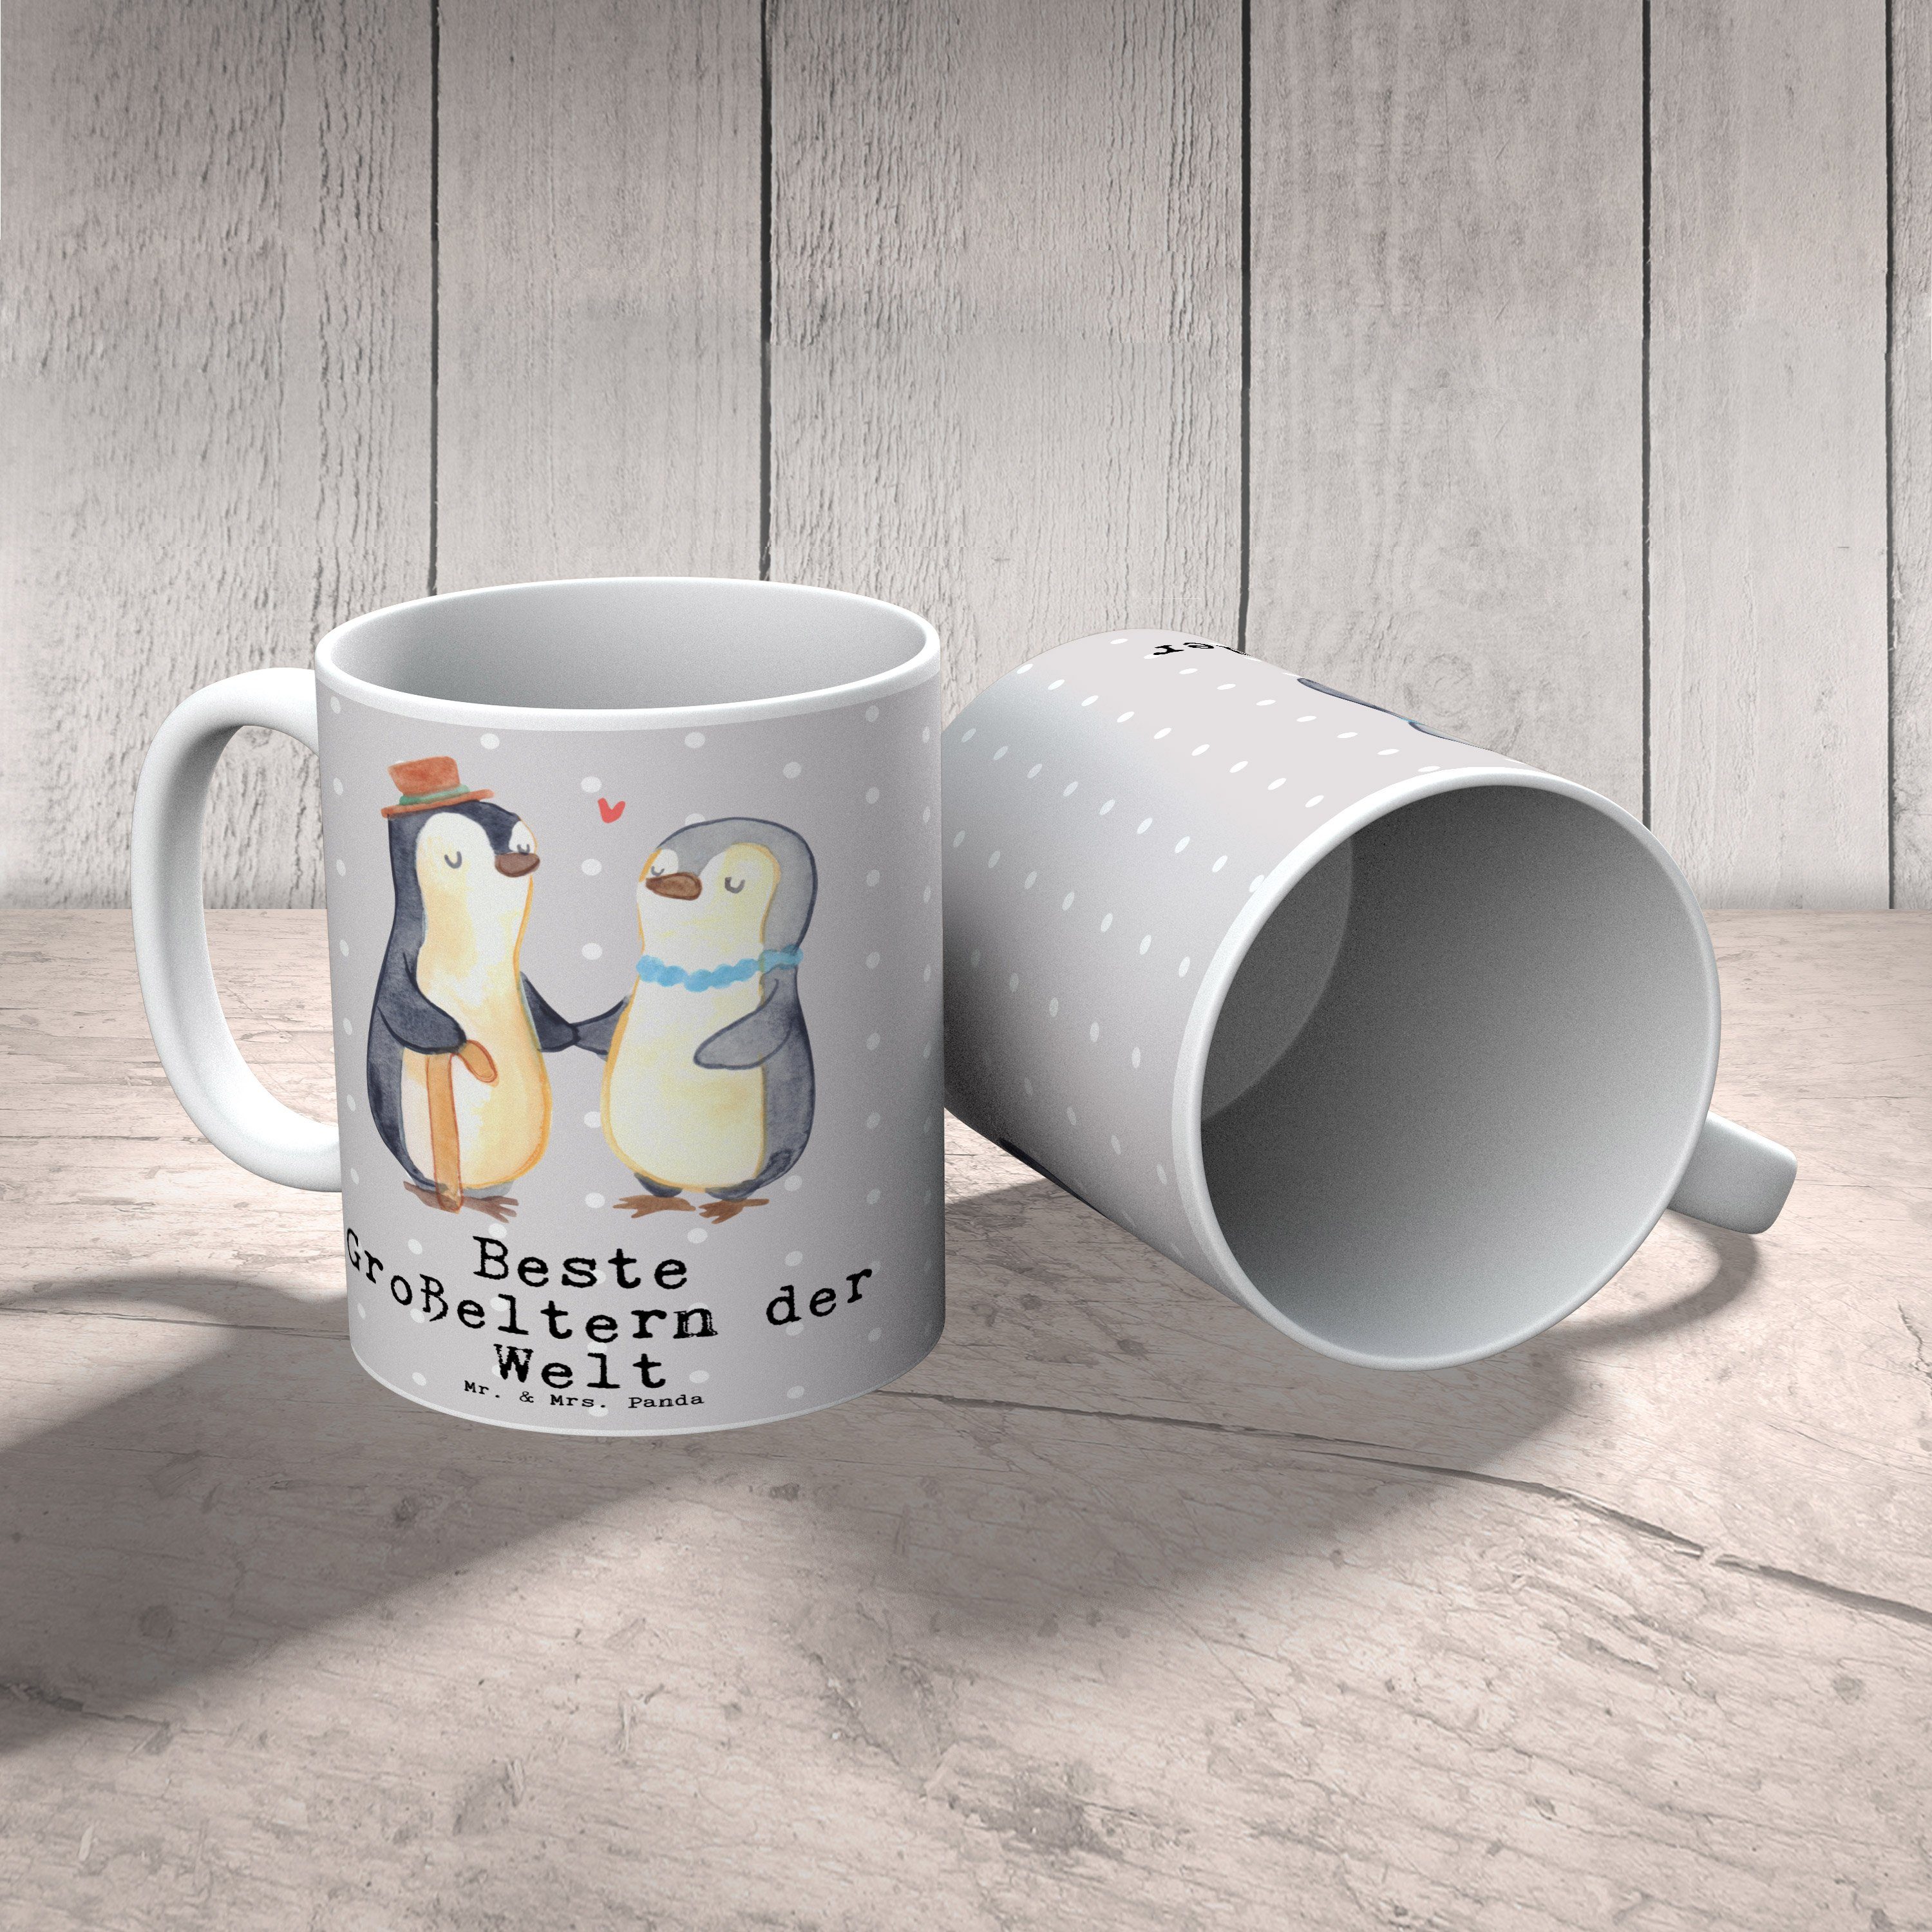 Keramik Omma, Geschenk, Großeltern der - Welt & Pinguin Mrs. Beste Mr. Panda Grau Tasse - Ta, Pastell